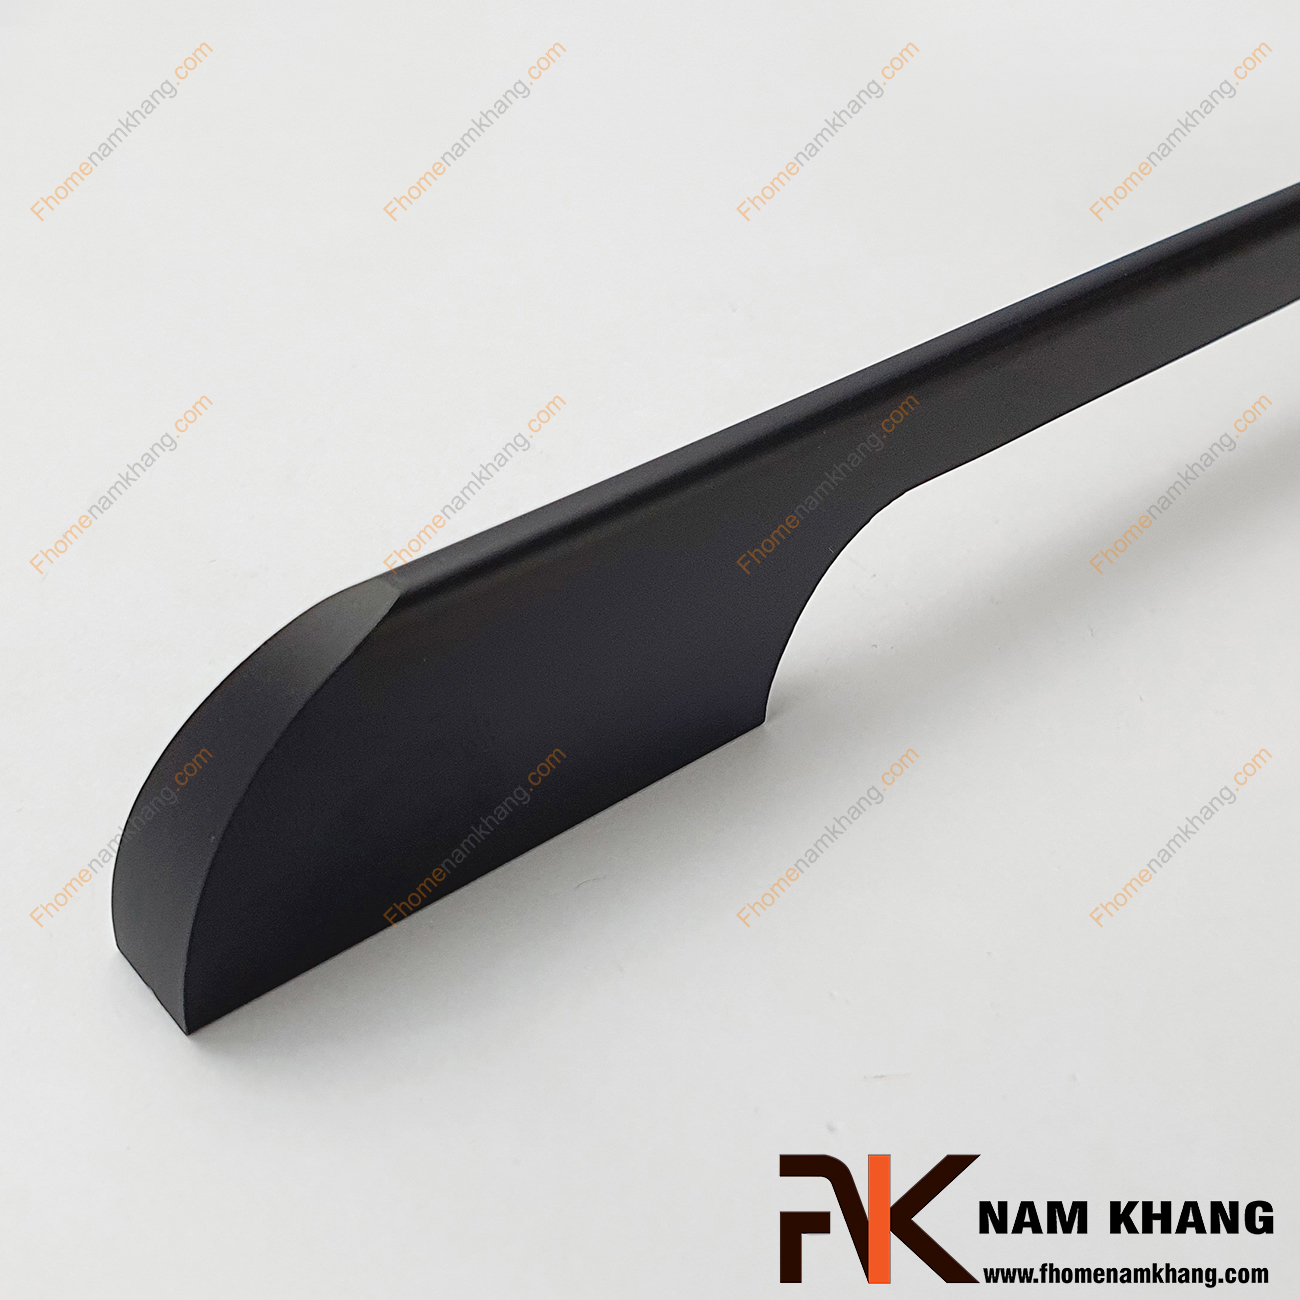 Tay nắm tủ dạng thanh dài đen NK089-D là loại tay nắm chuyên dùng cho các dạng tủ kệ có chiều dài lớn, đặc biệt là các dạng tủ quần áo.